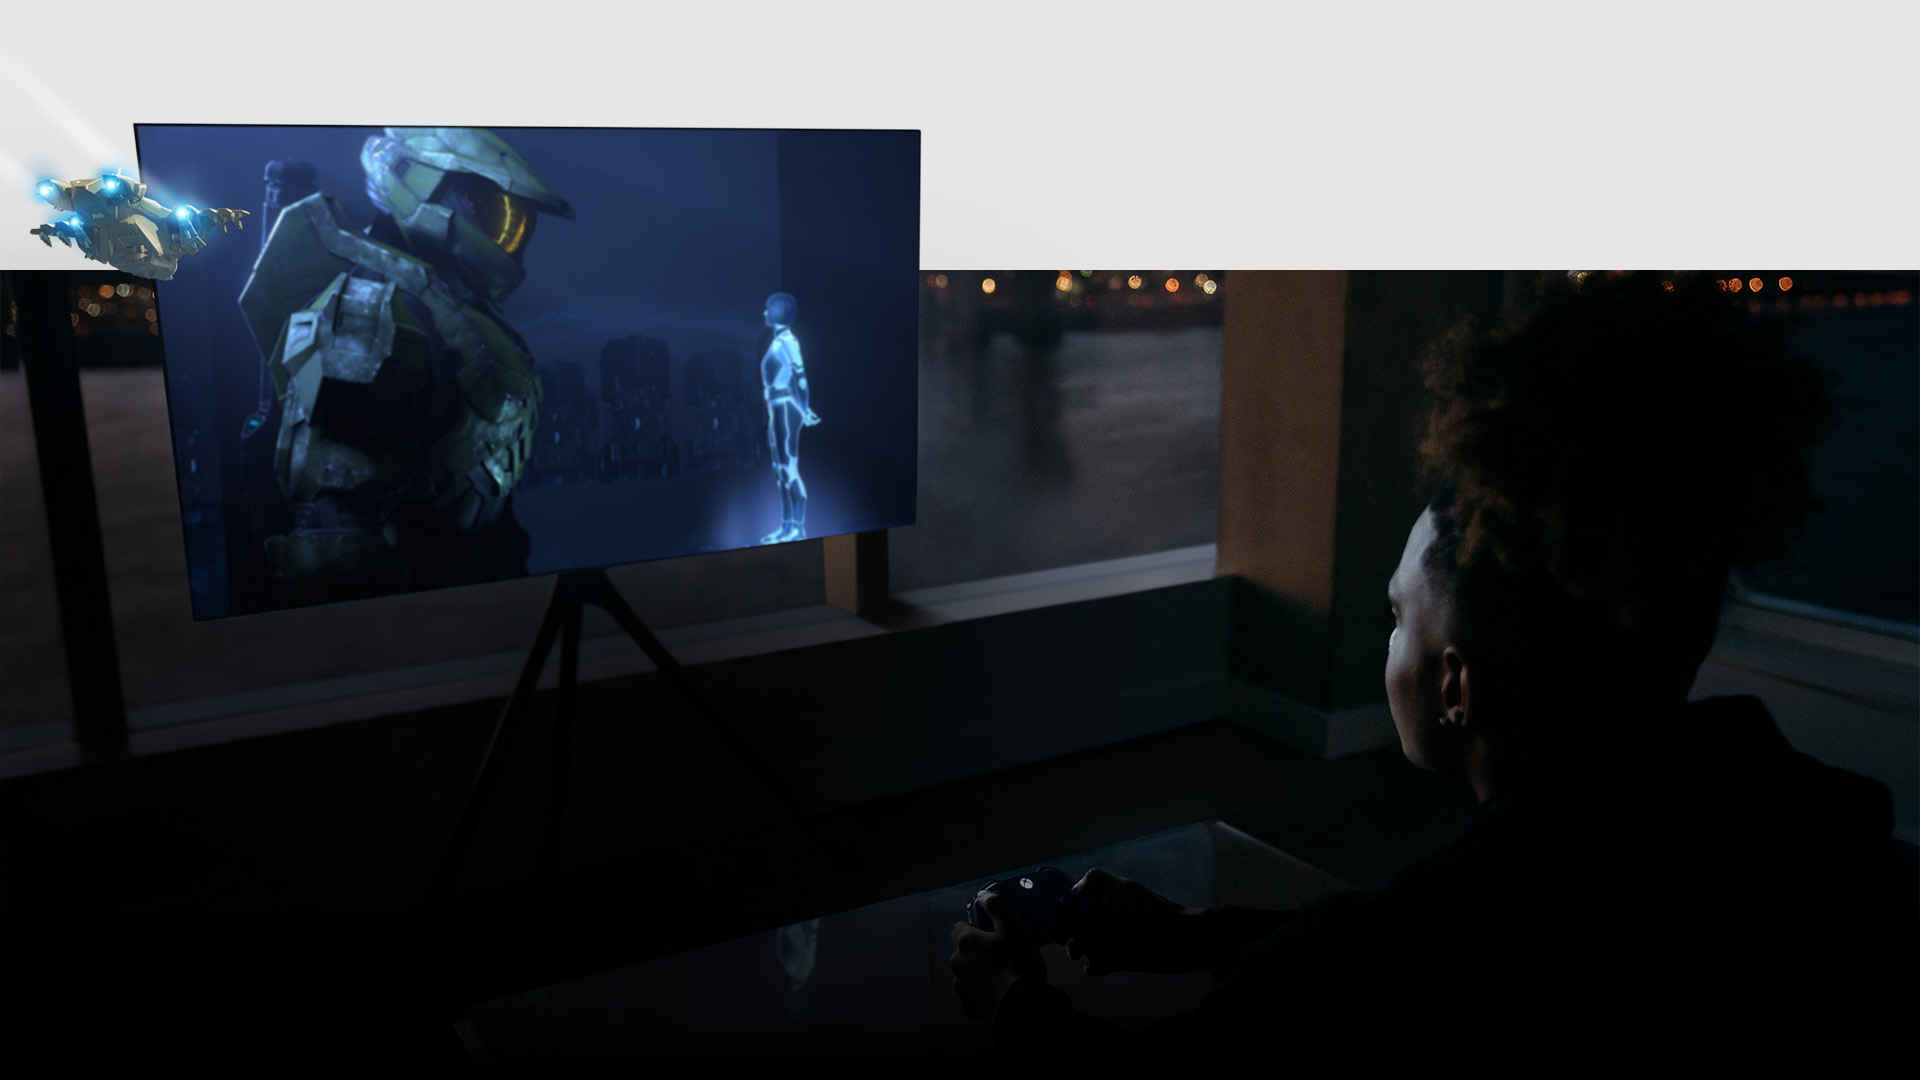 El jugador usa el controlador en la sala de estar mientras se juega a Halo Infinite en el televisor Samsung